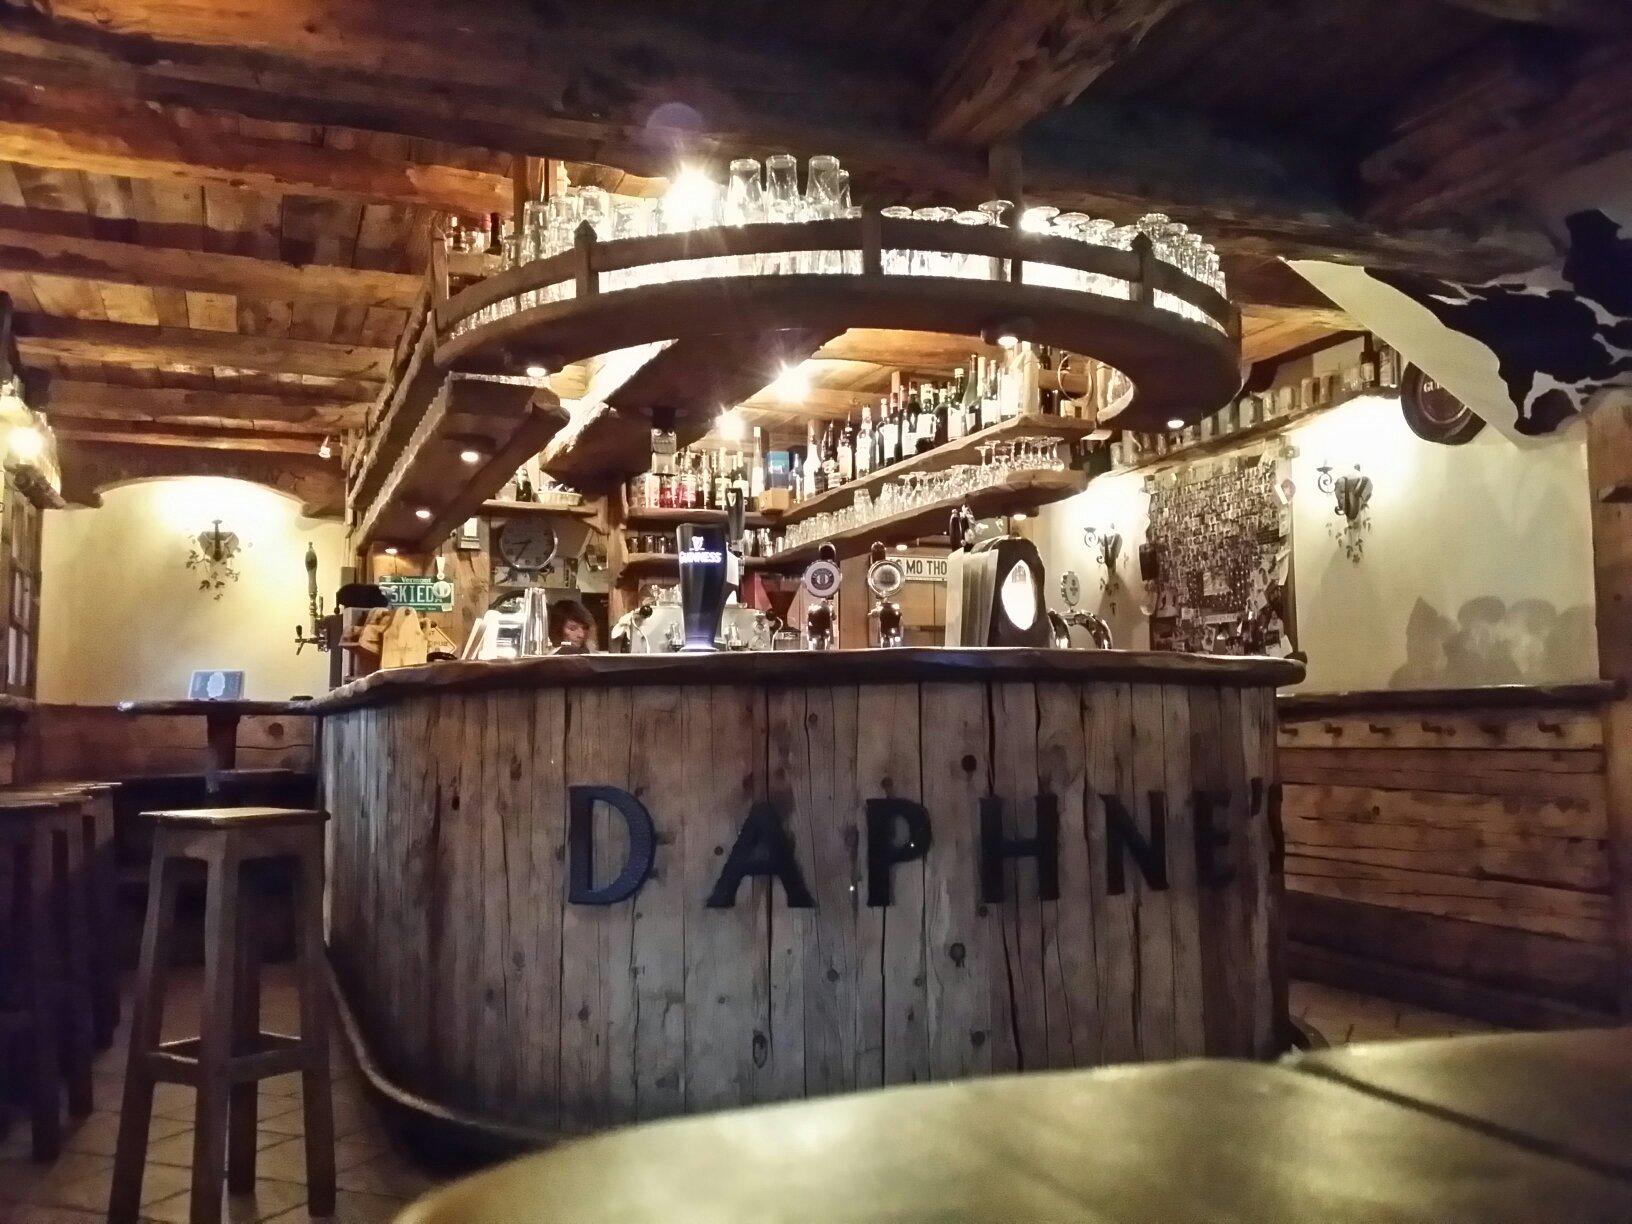 Daphne's pub